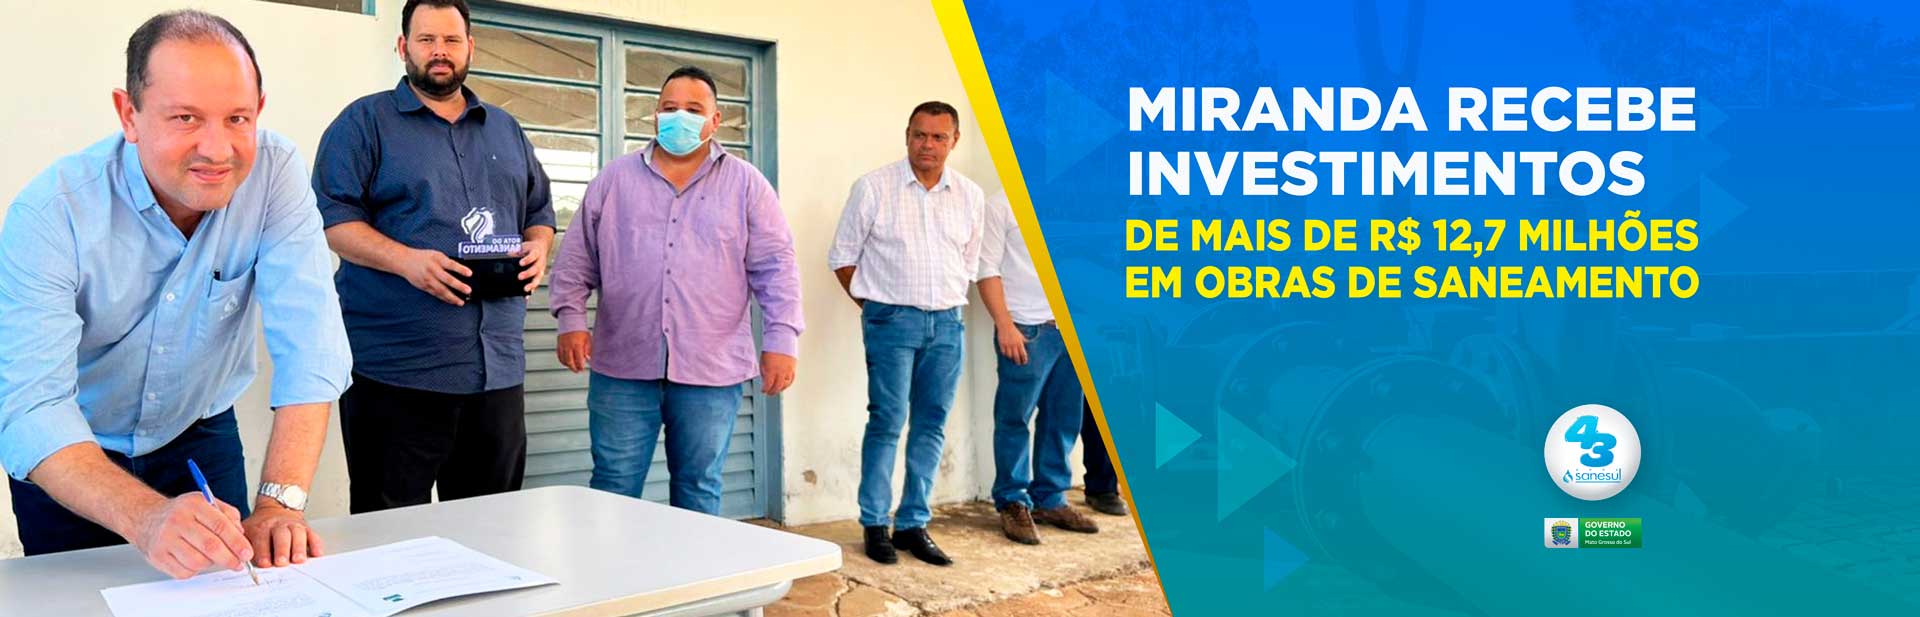 Miranda recebe investimentos de mais de R$ 12,7 milhões em obras de saneamento                                                                                                                                                                                                                                                                                                                                                                                                                                      